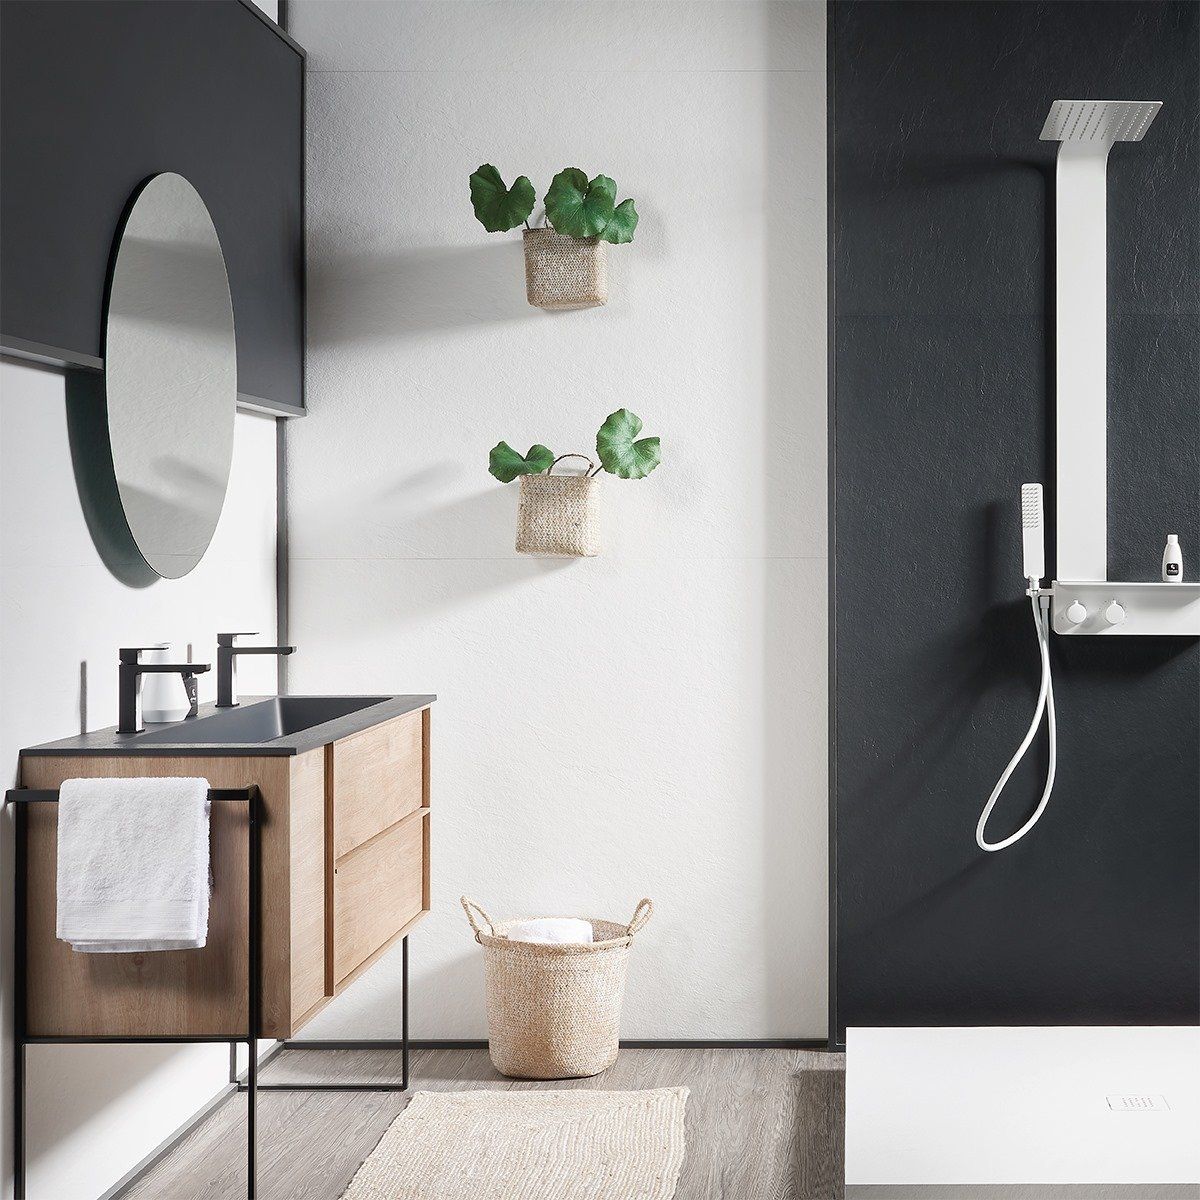 Image of minimalistic bathroom sink